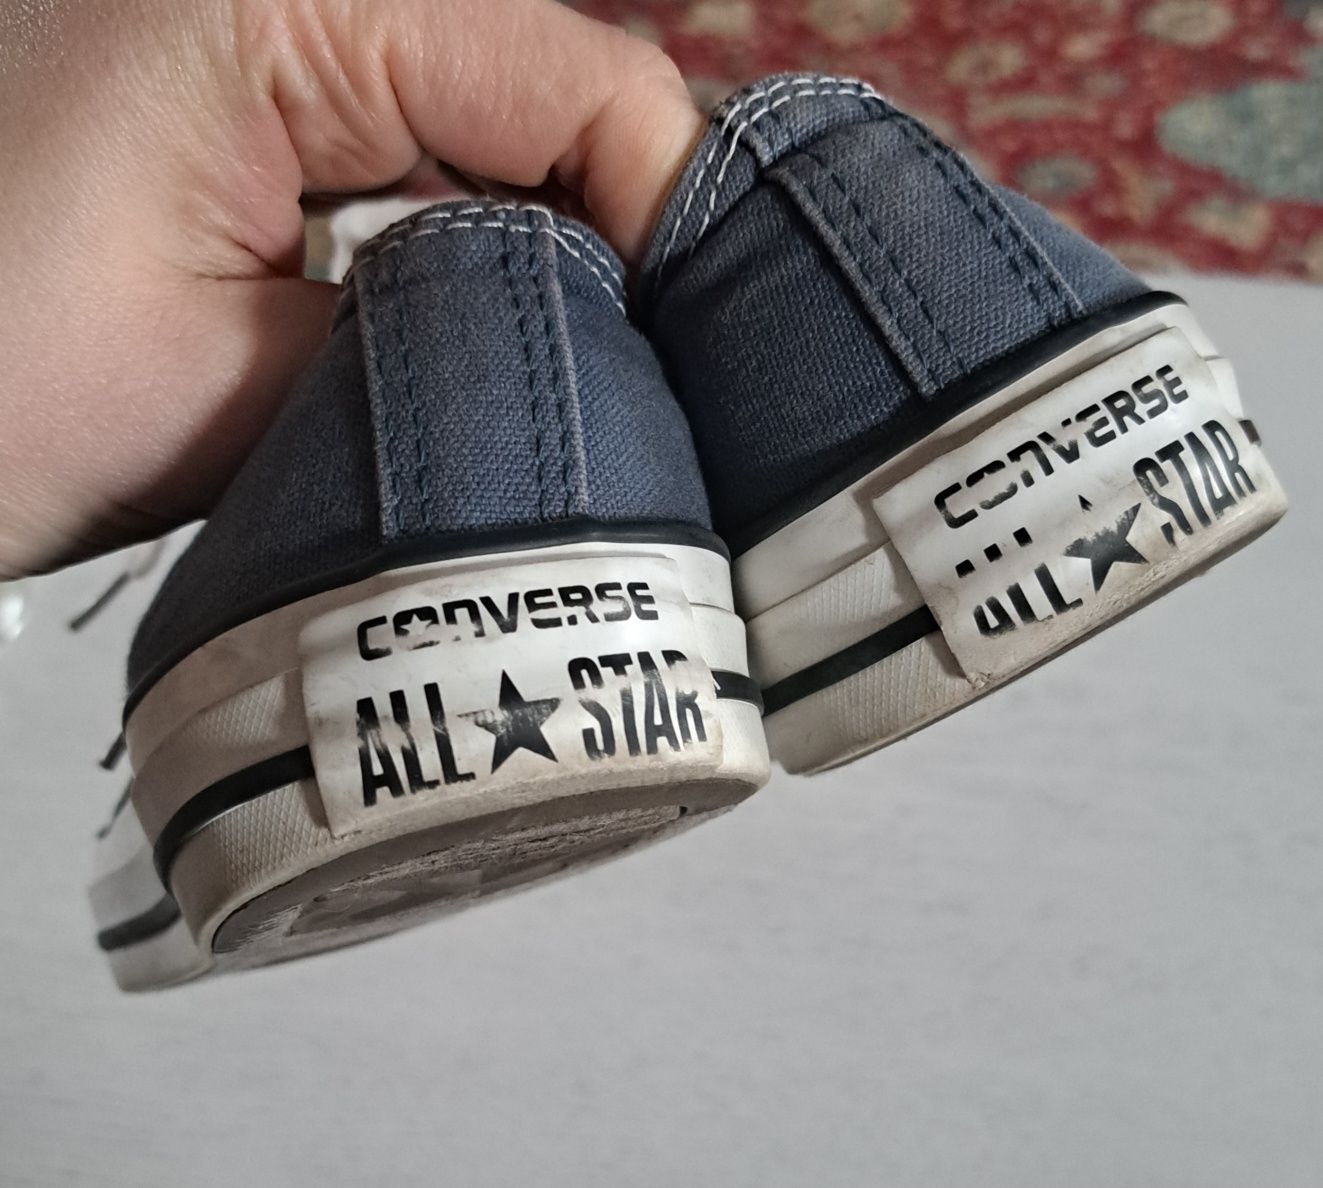 Trampki Converse , niebieskie, 35 rozmiar